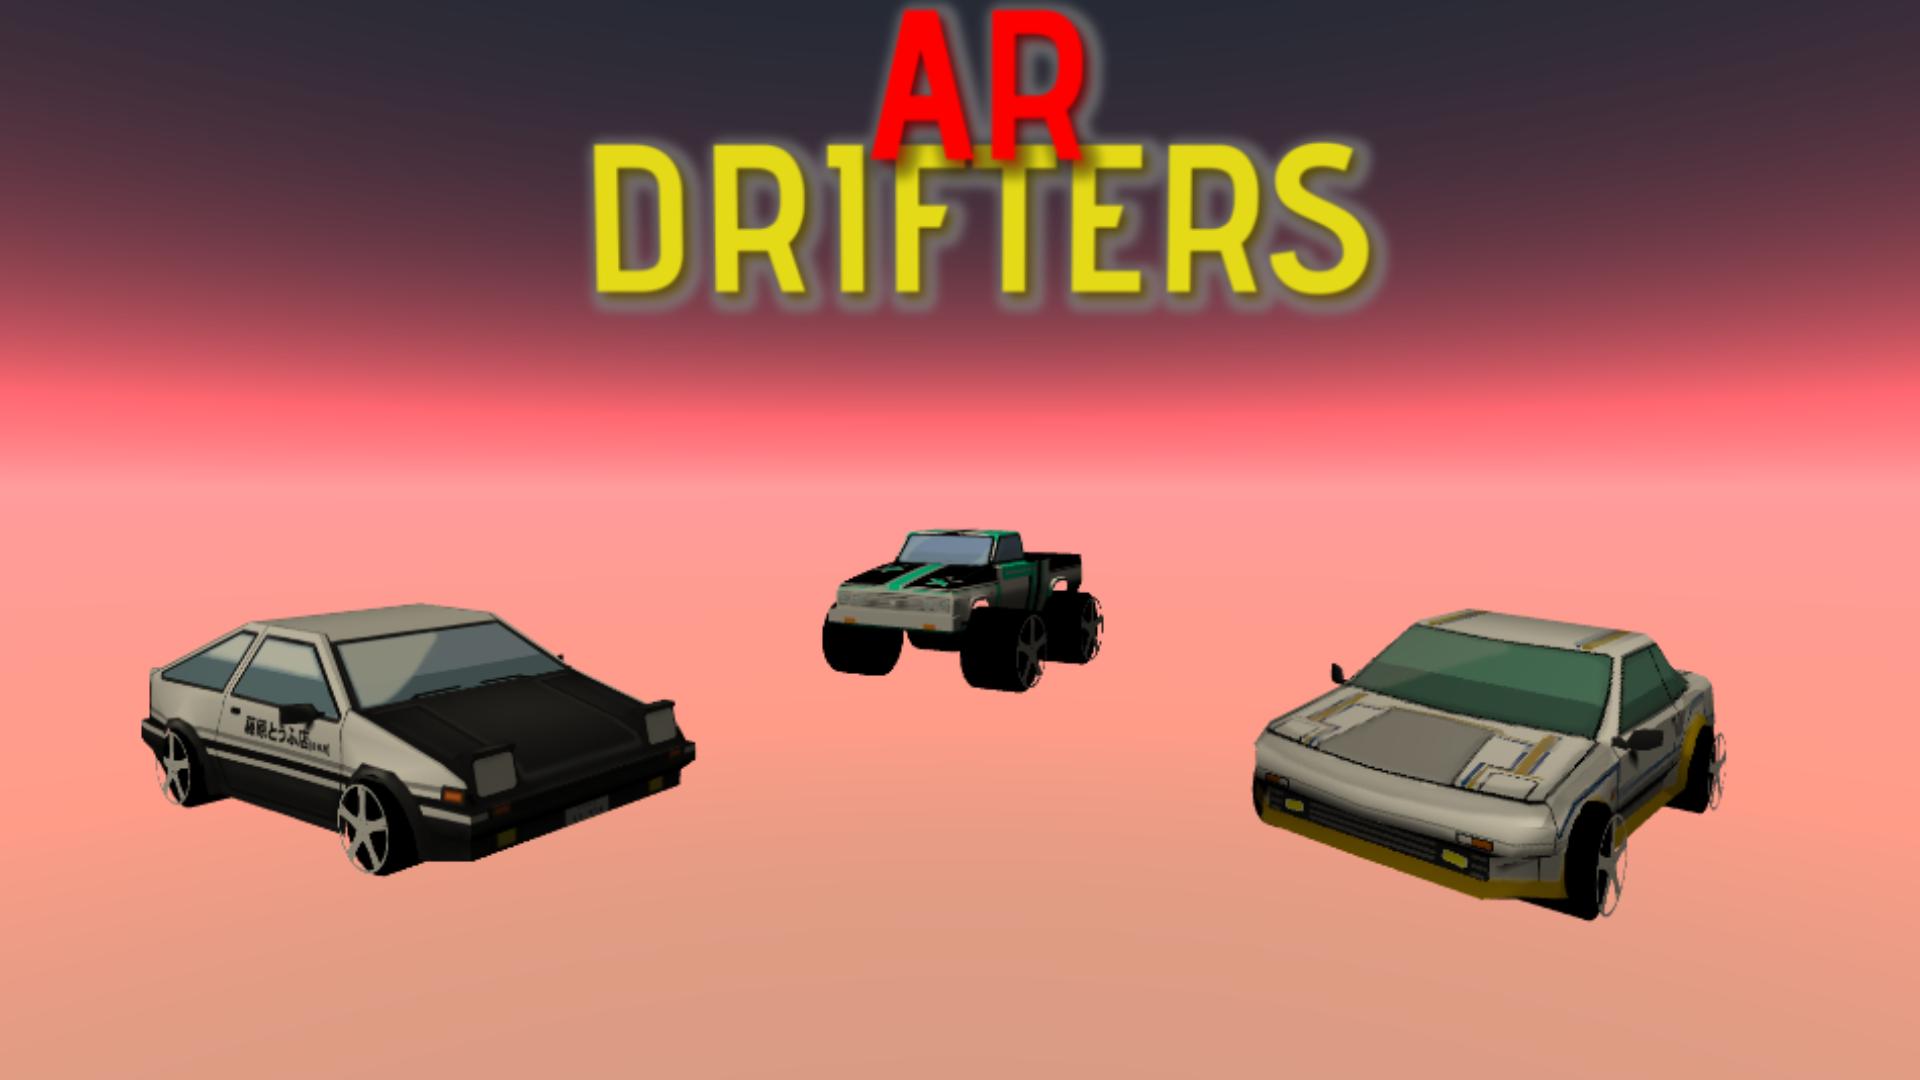 AR Drifters